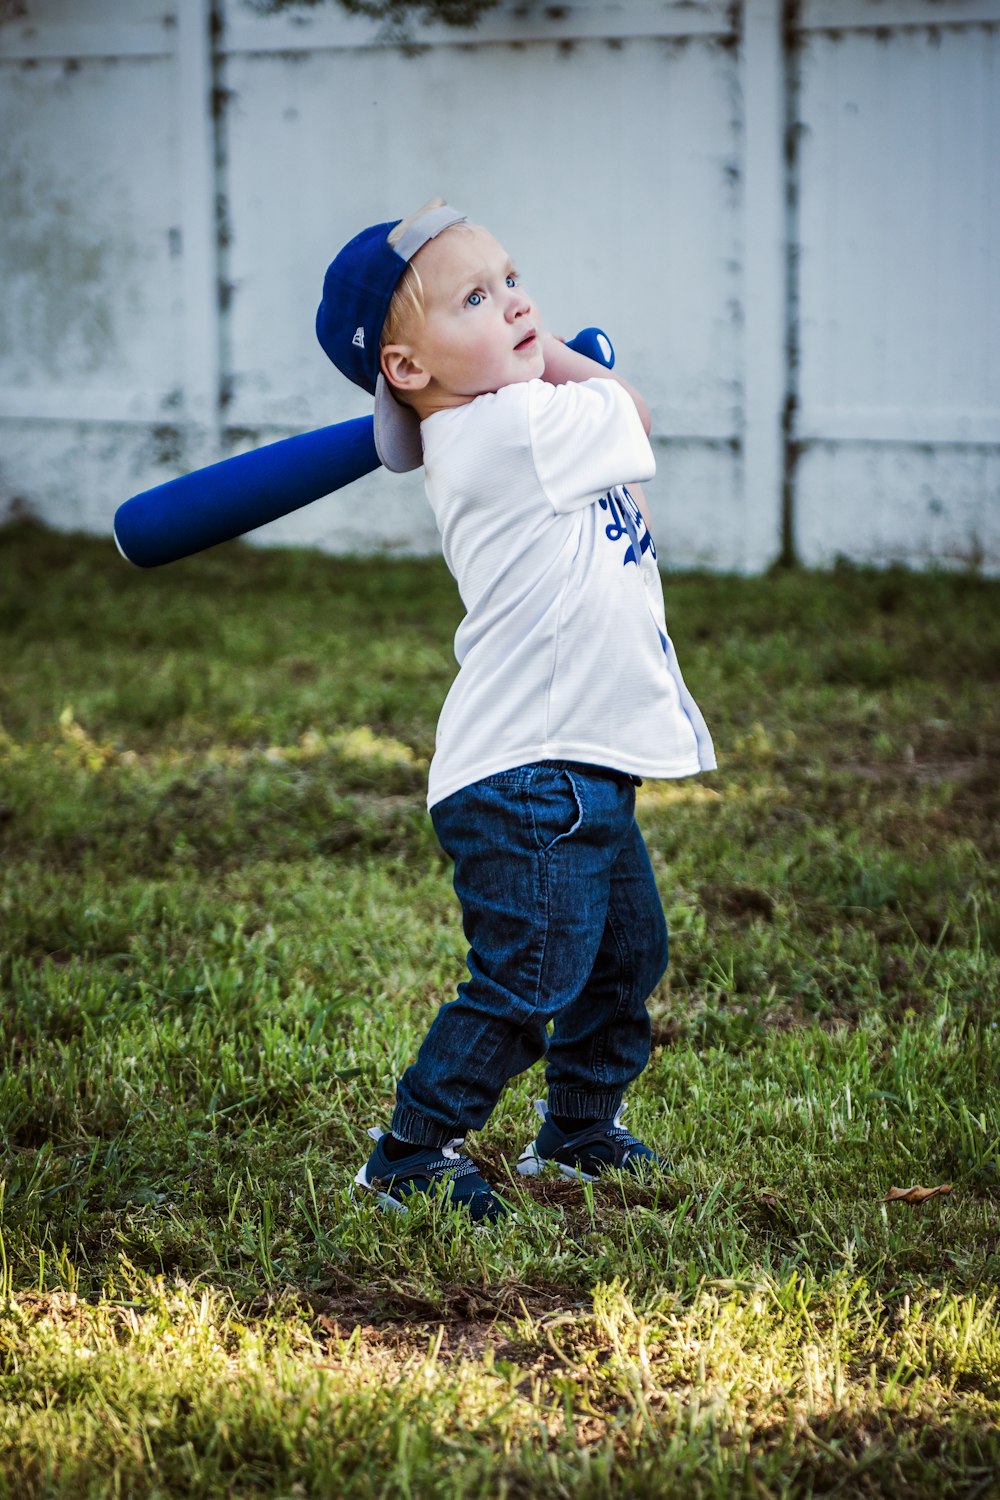 Ein kleiner Junge hält einen Baseballschläger auf einem Feld